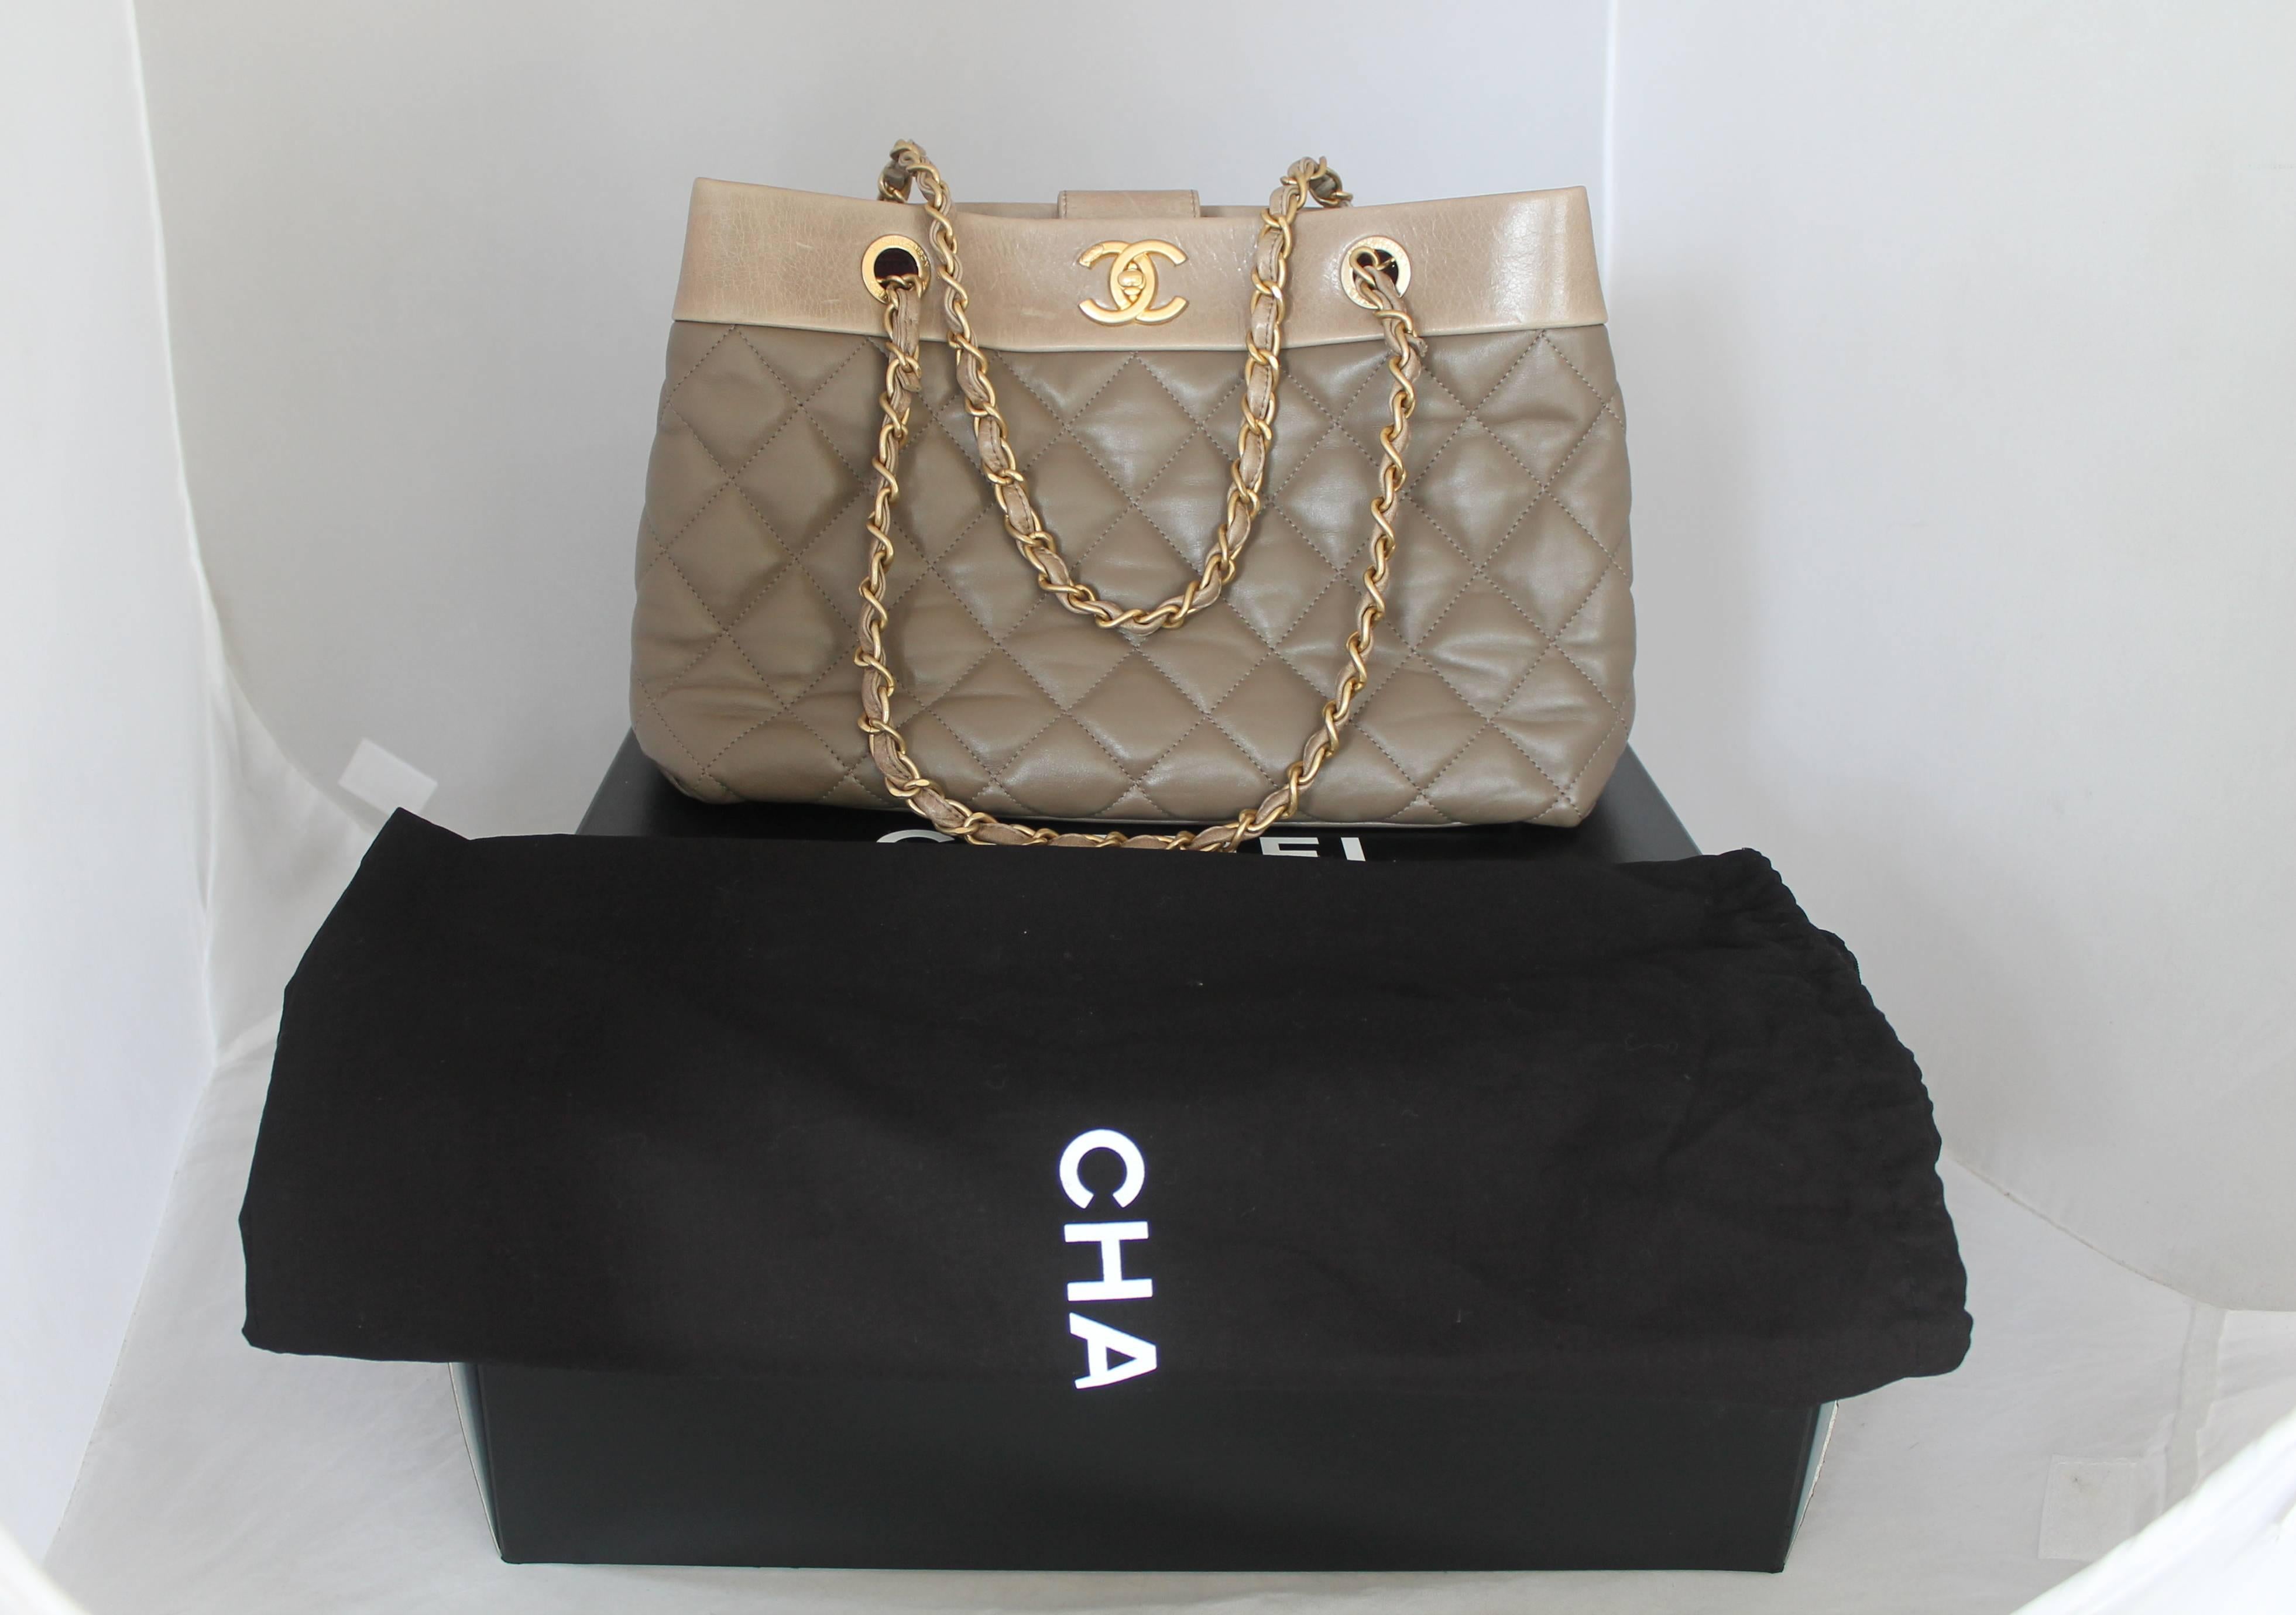 Chanel 2013 Taupe Soft Elegance Tote Shoulder Bag - GHW 4